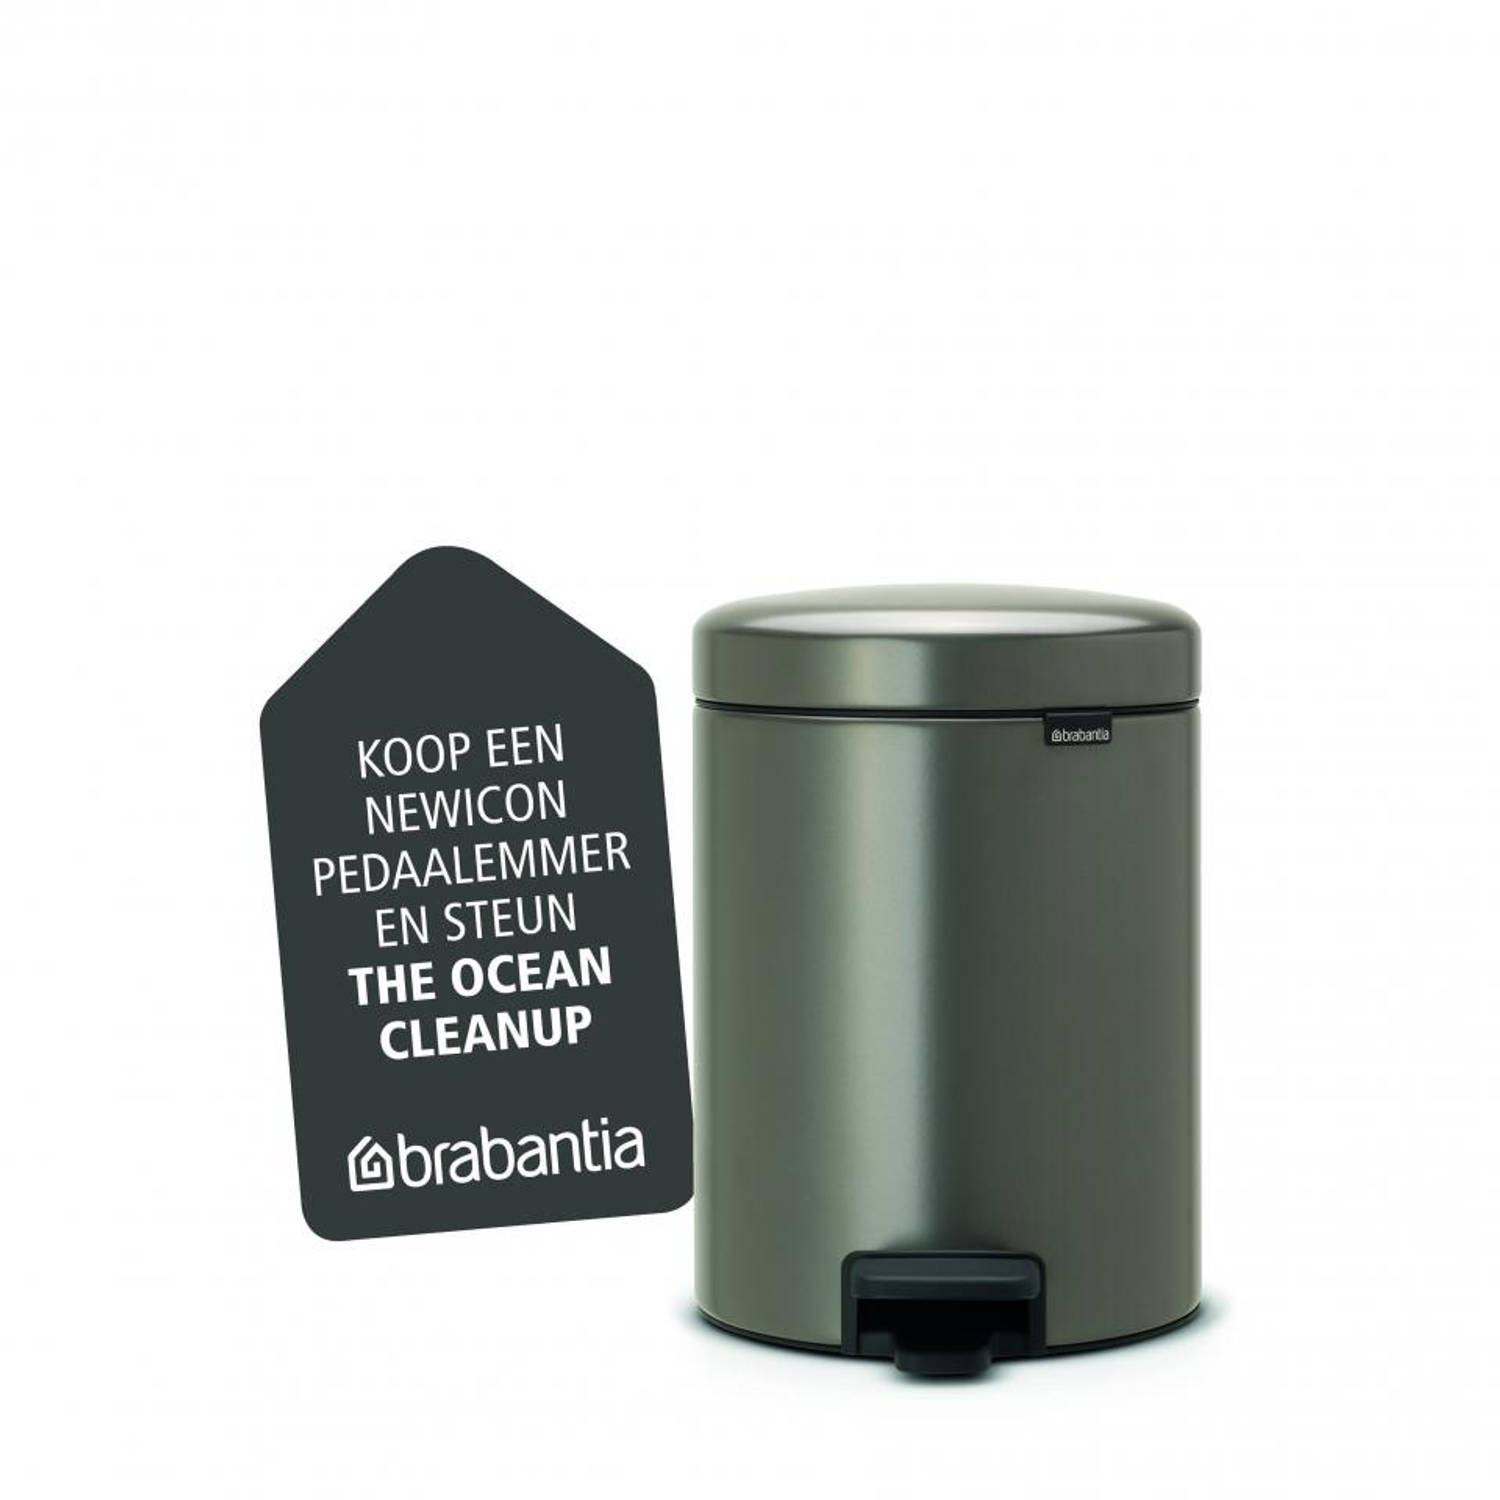 fluweel Discreet Reinig de vloer Brabantia newIcon pedaalemmer 5 liter met kunststof binnenemmer - Platinum  | Blokker